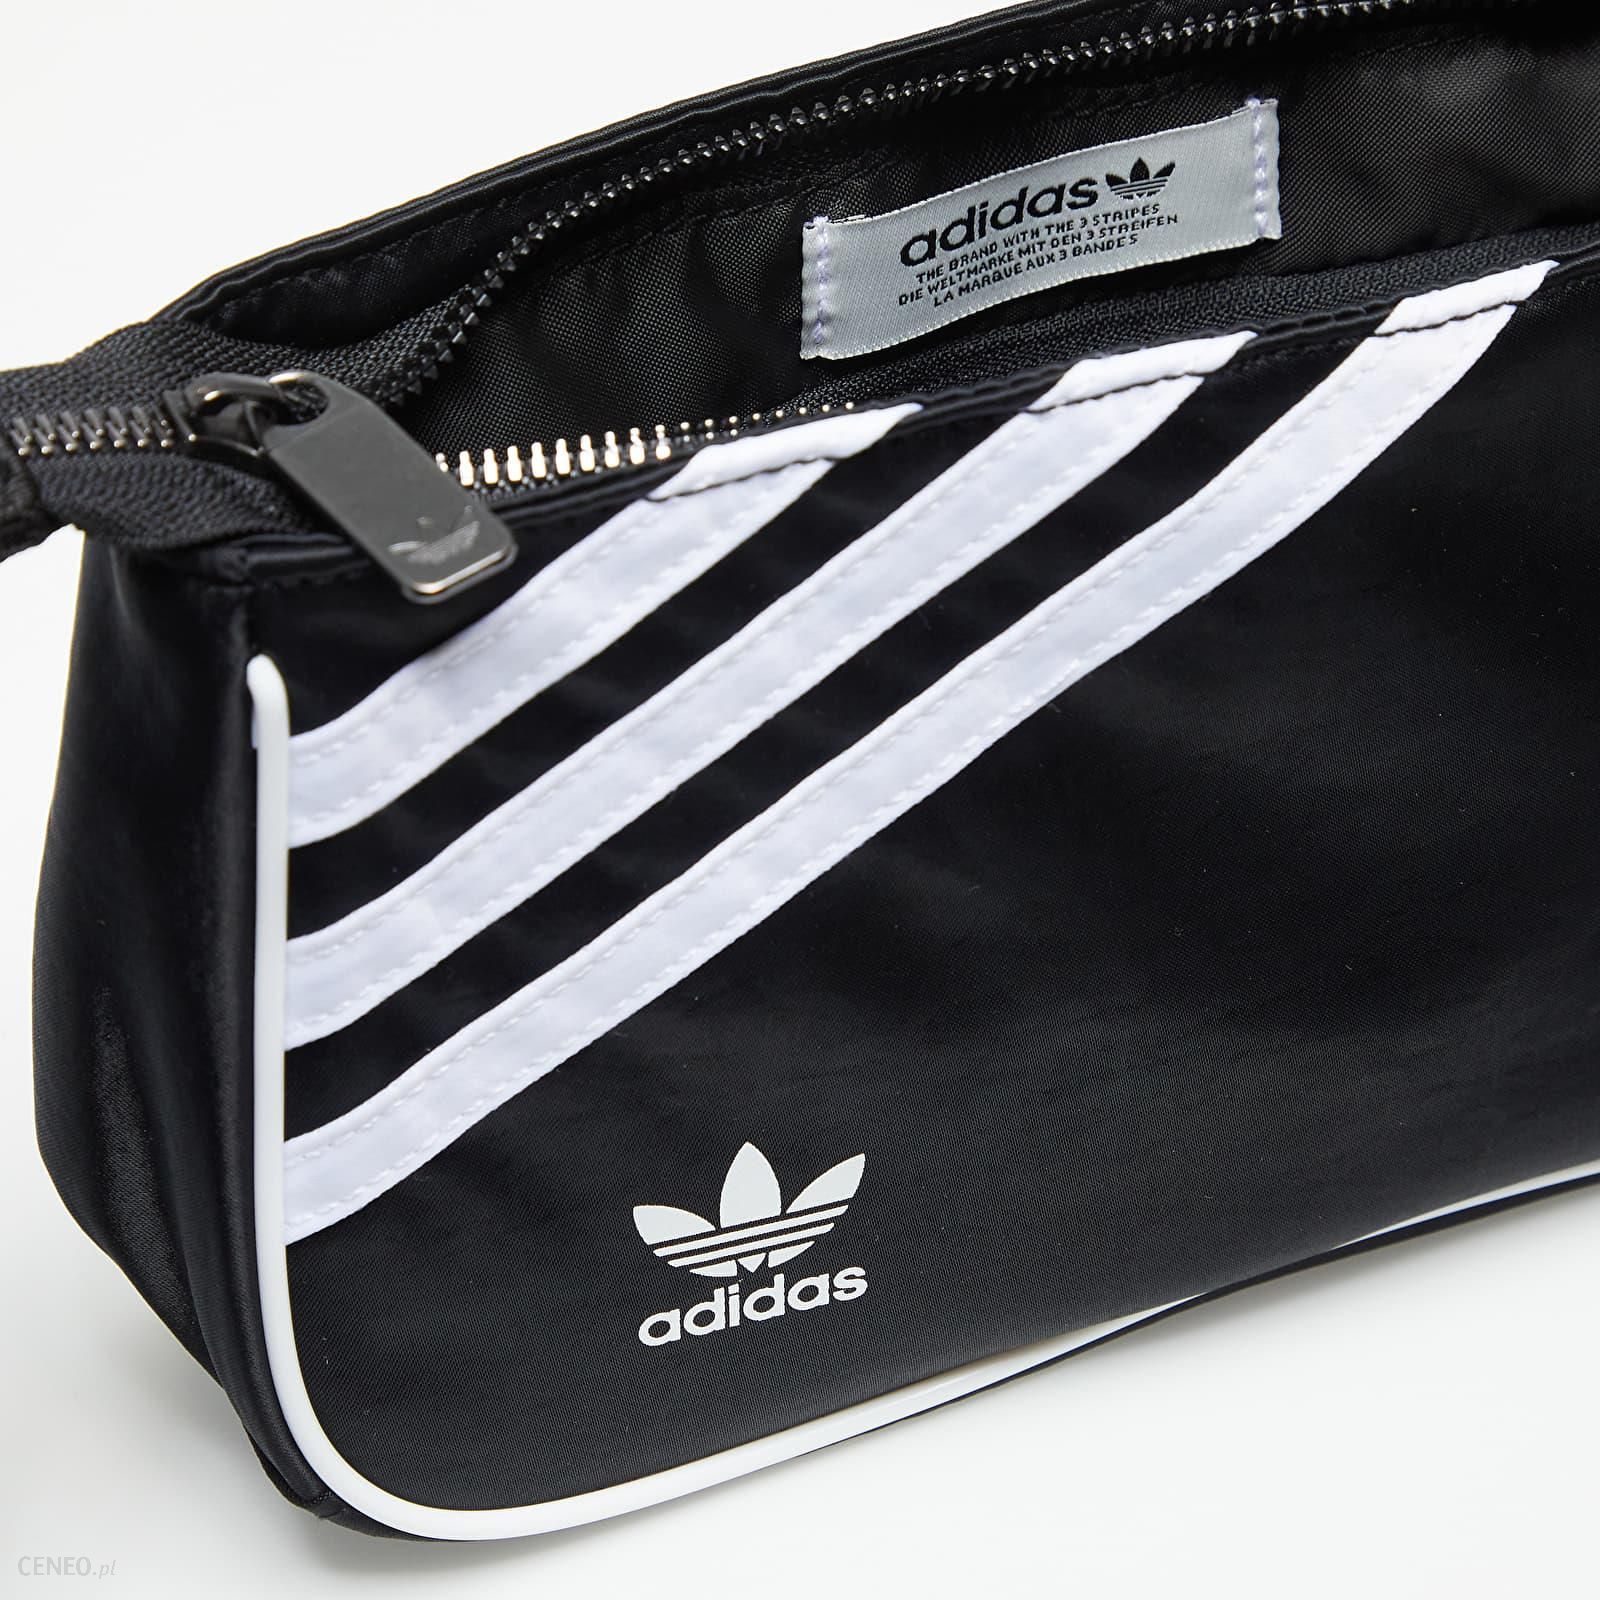 Adidas Originals Mini Airliner Bag Black - Ceny i opinie ...